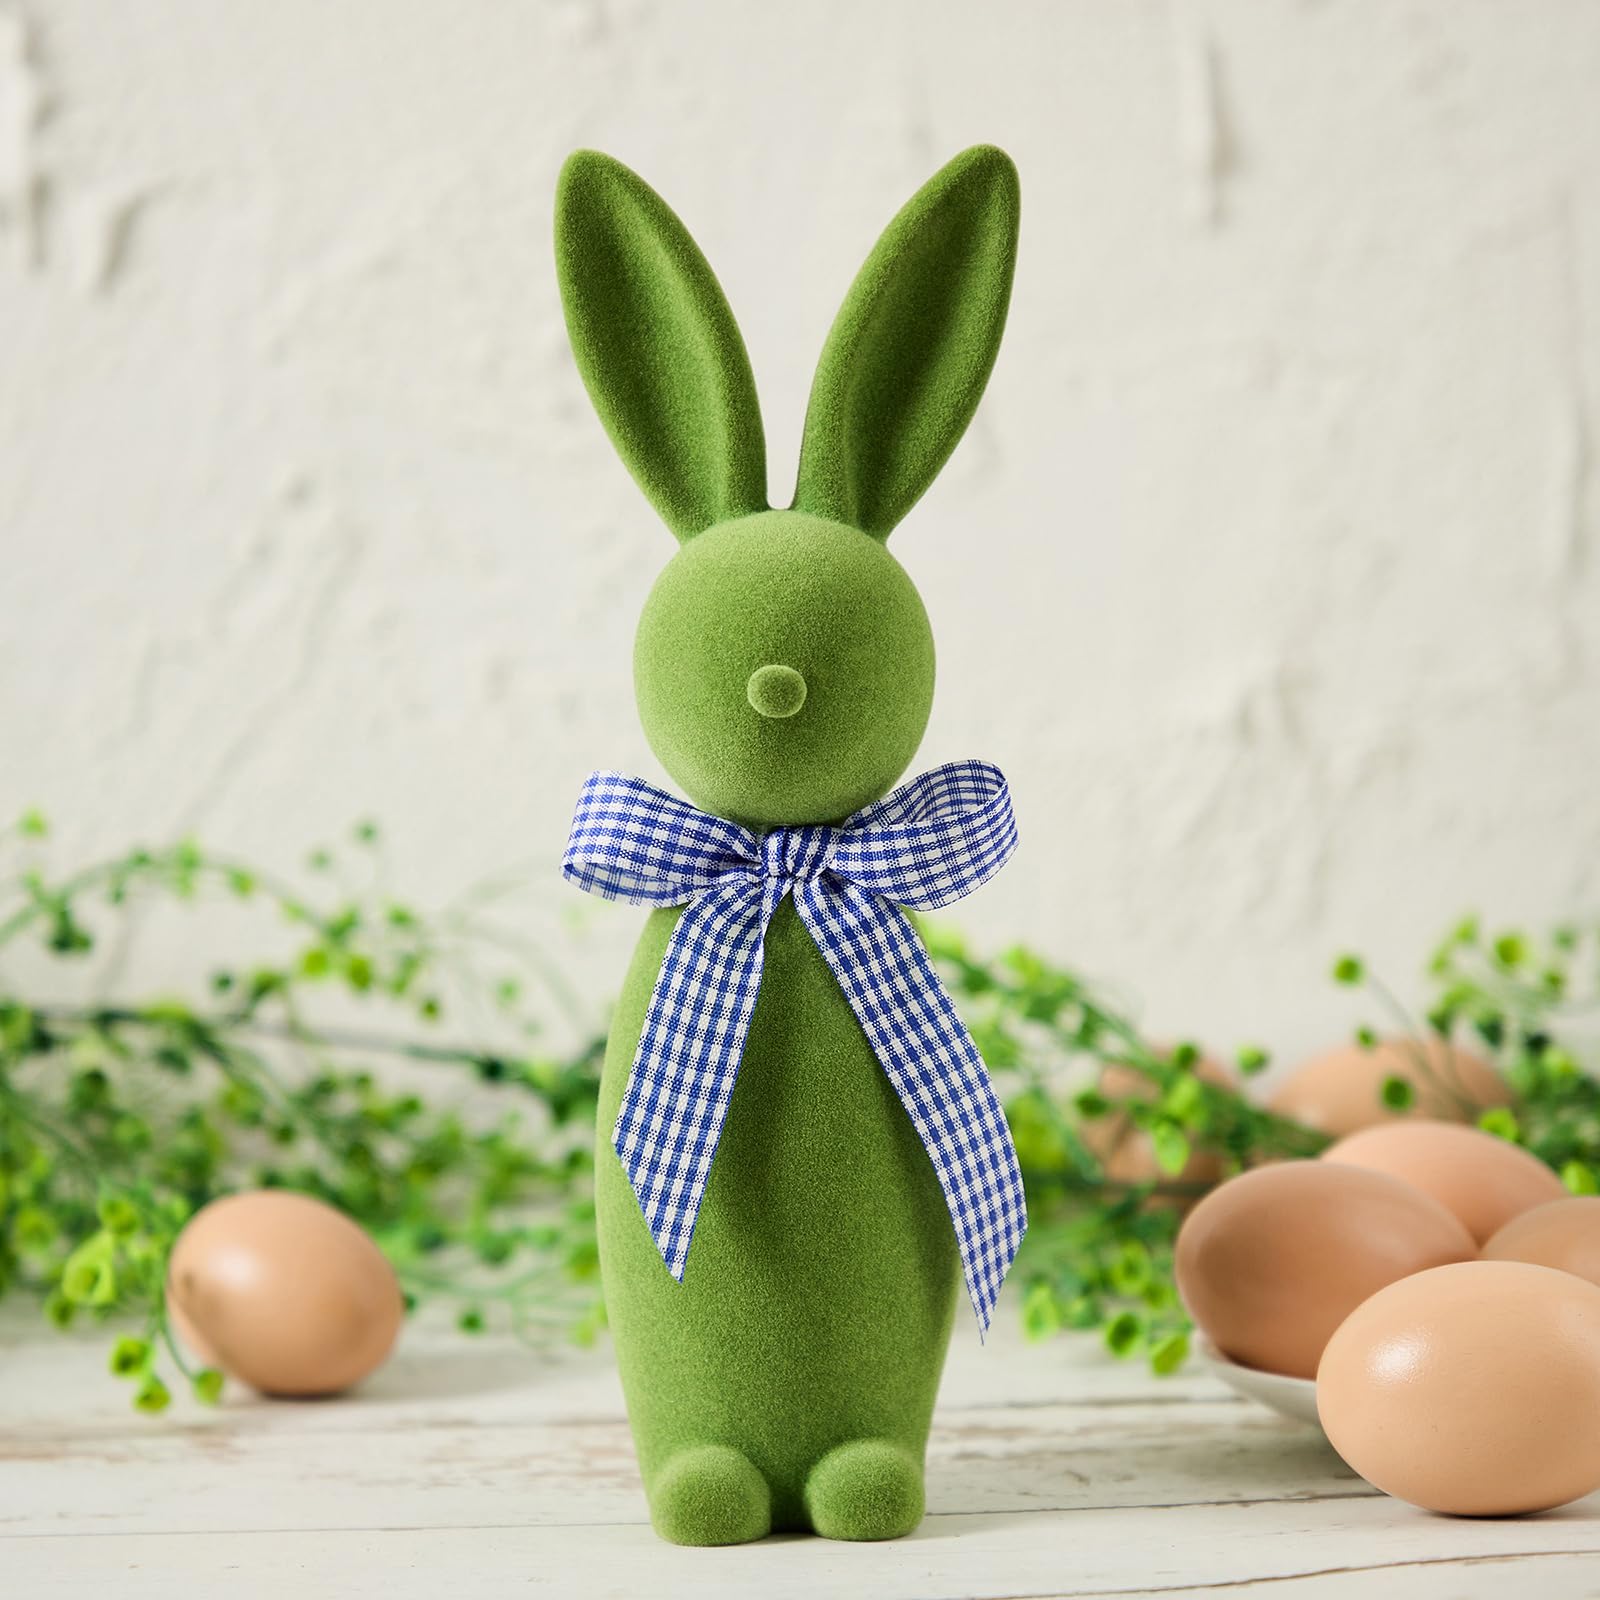 🔥HOT SALE 49% OFF - Easter Flocking Rabbit Figures Tabletop Ornament